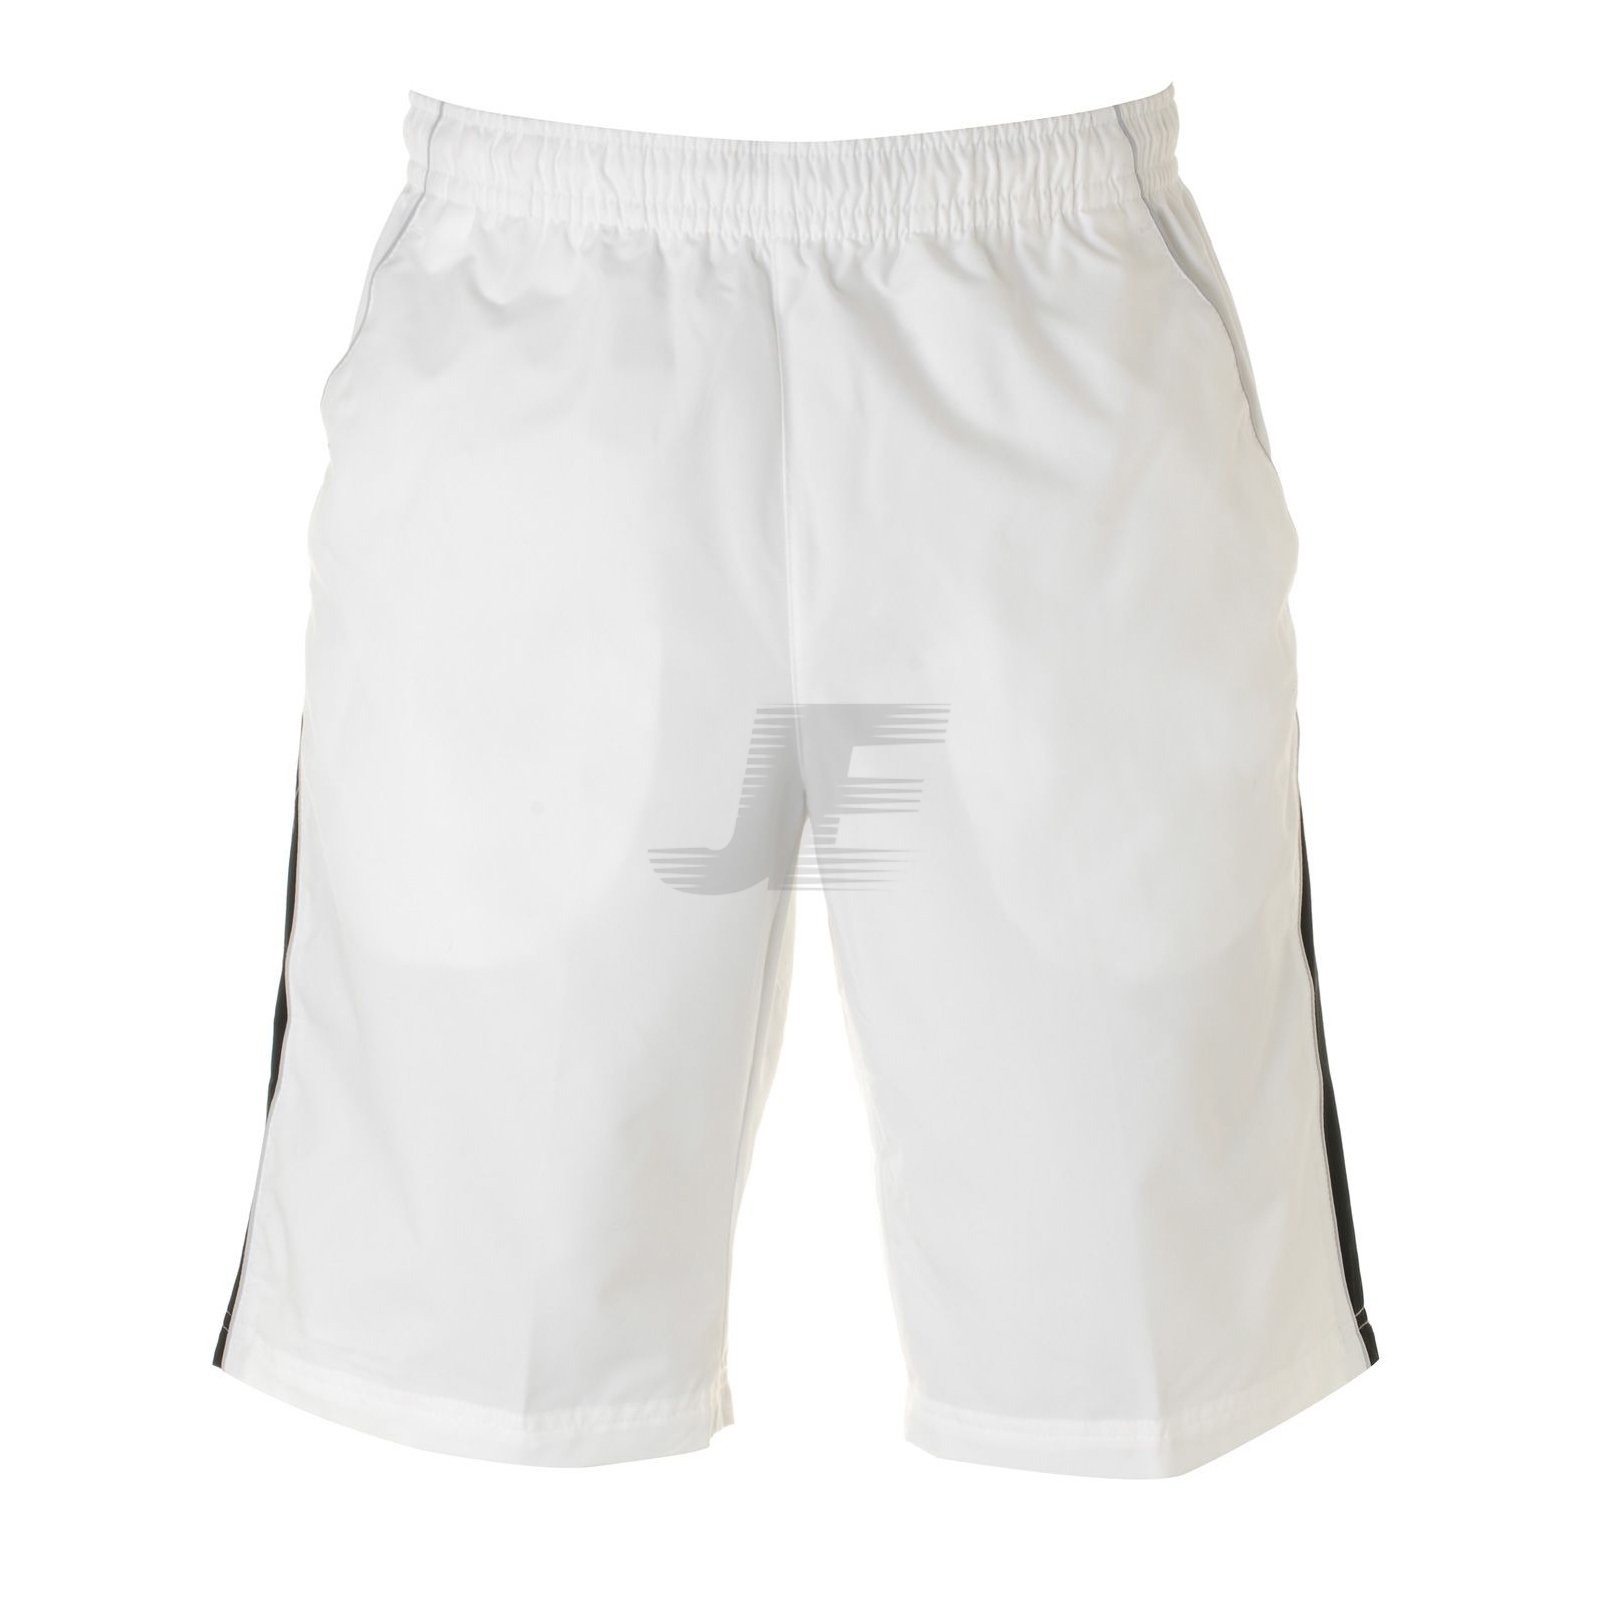 Mens Micro Fabric White Running Shorts